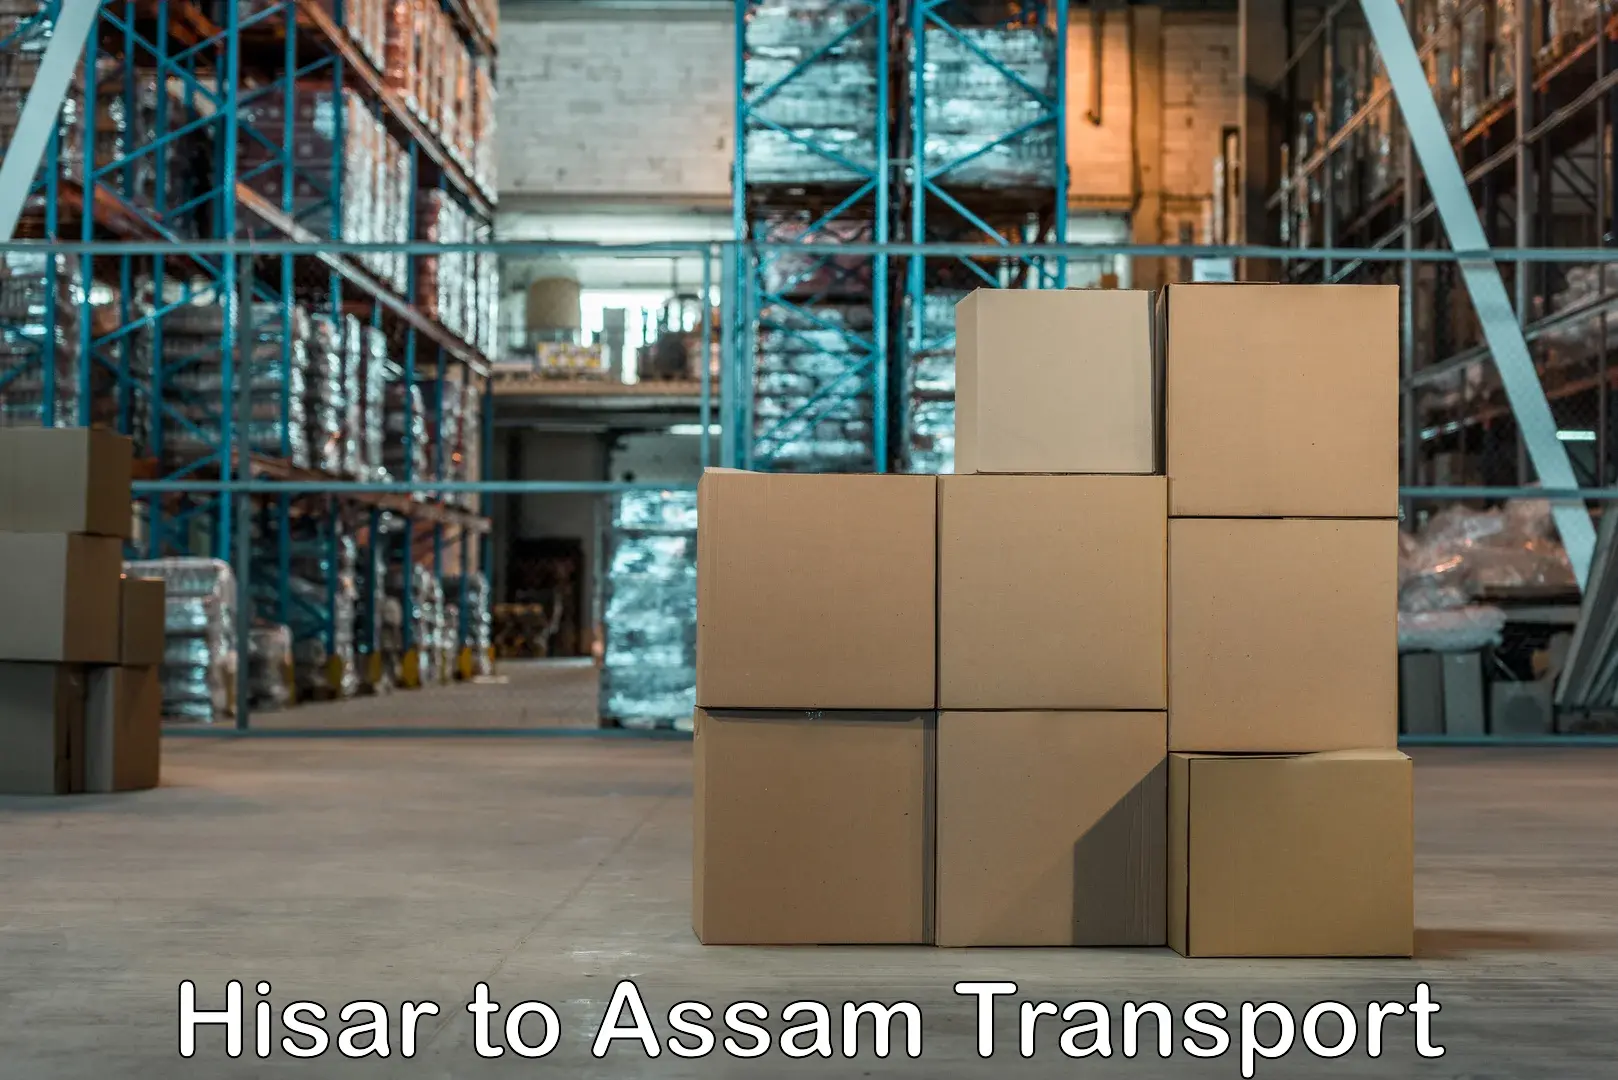 Transport in sharing Hisar to Assam